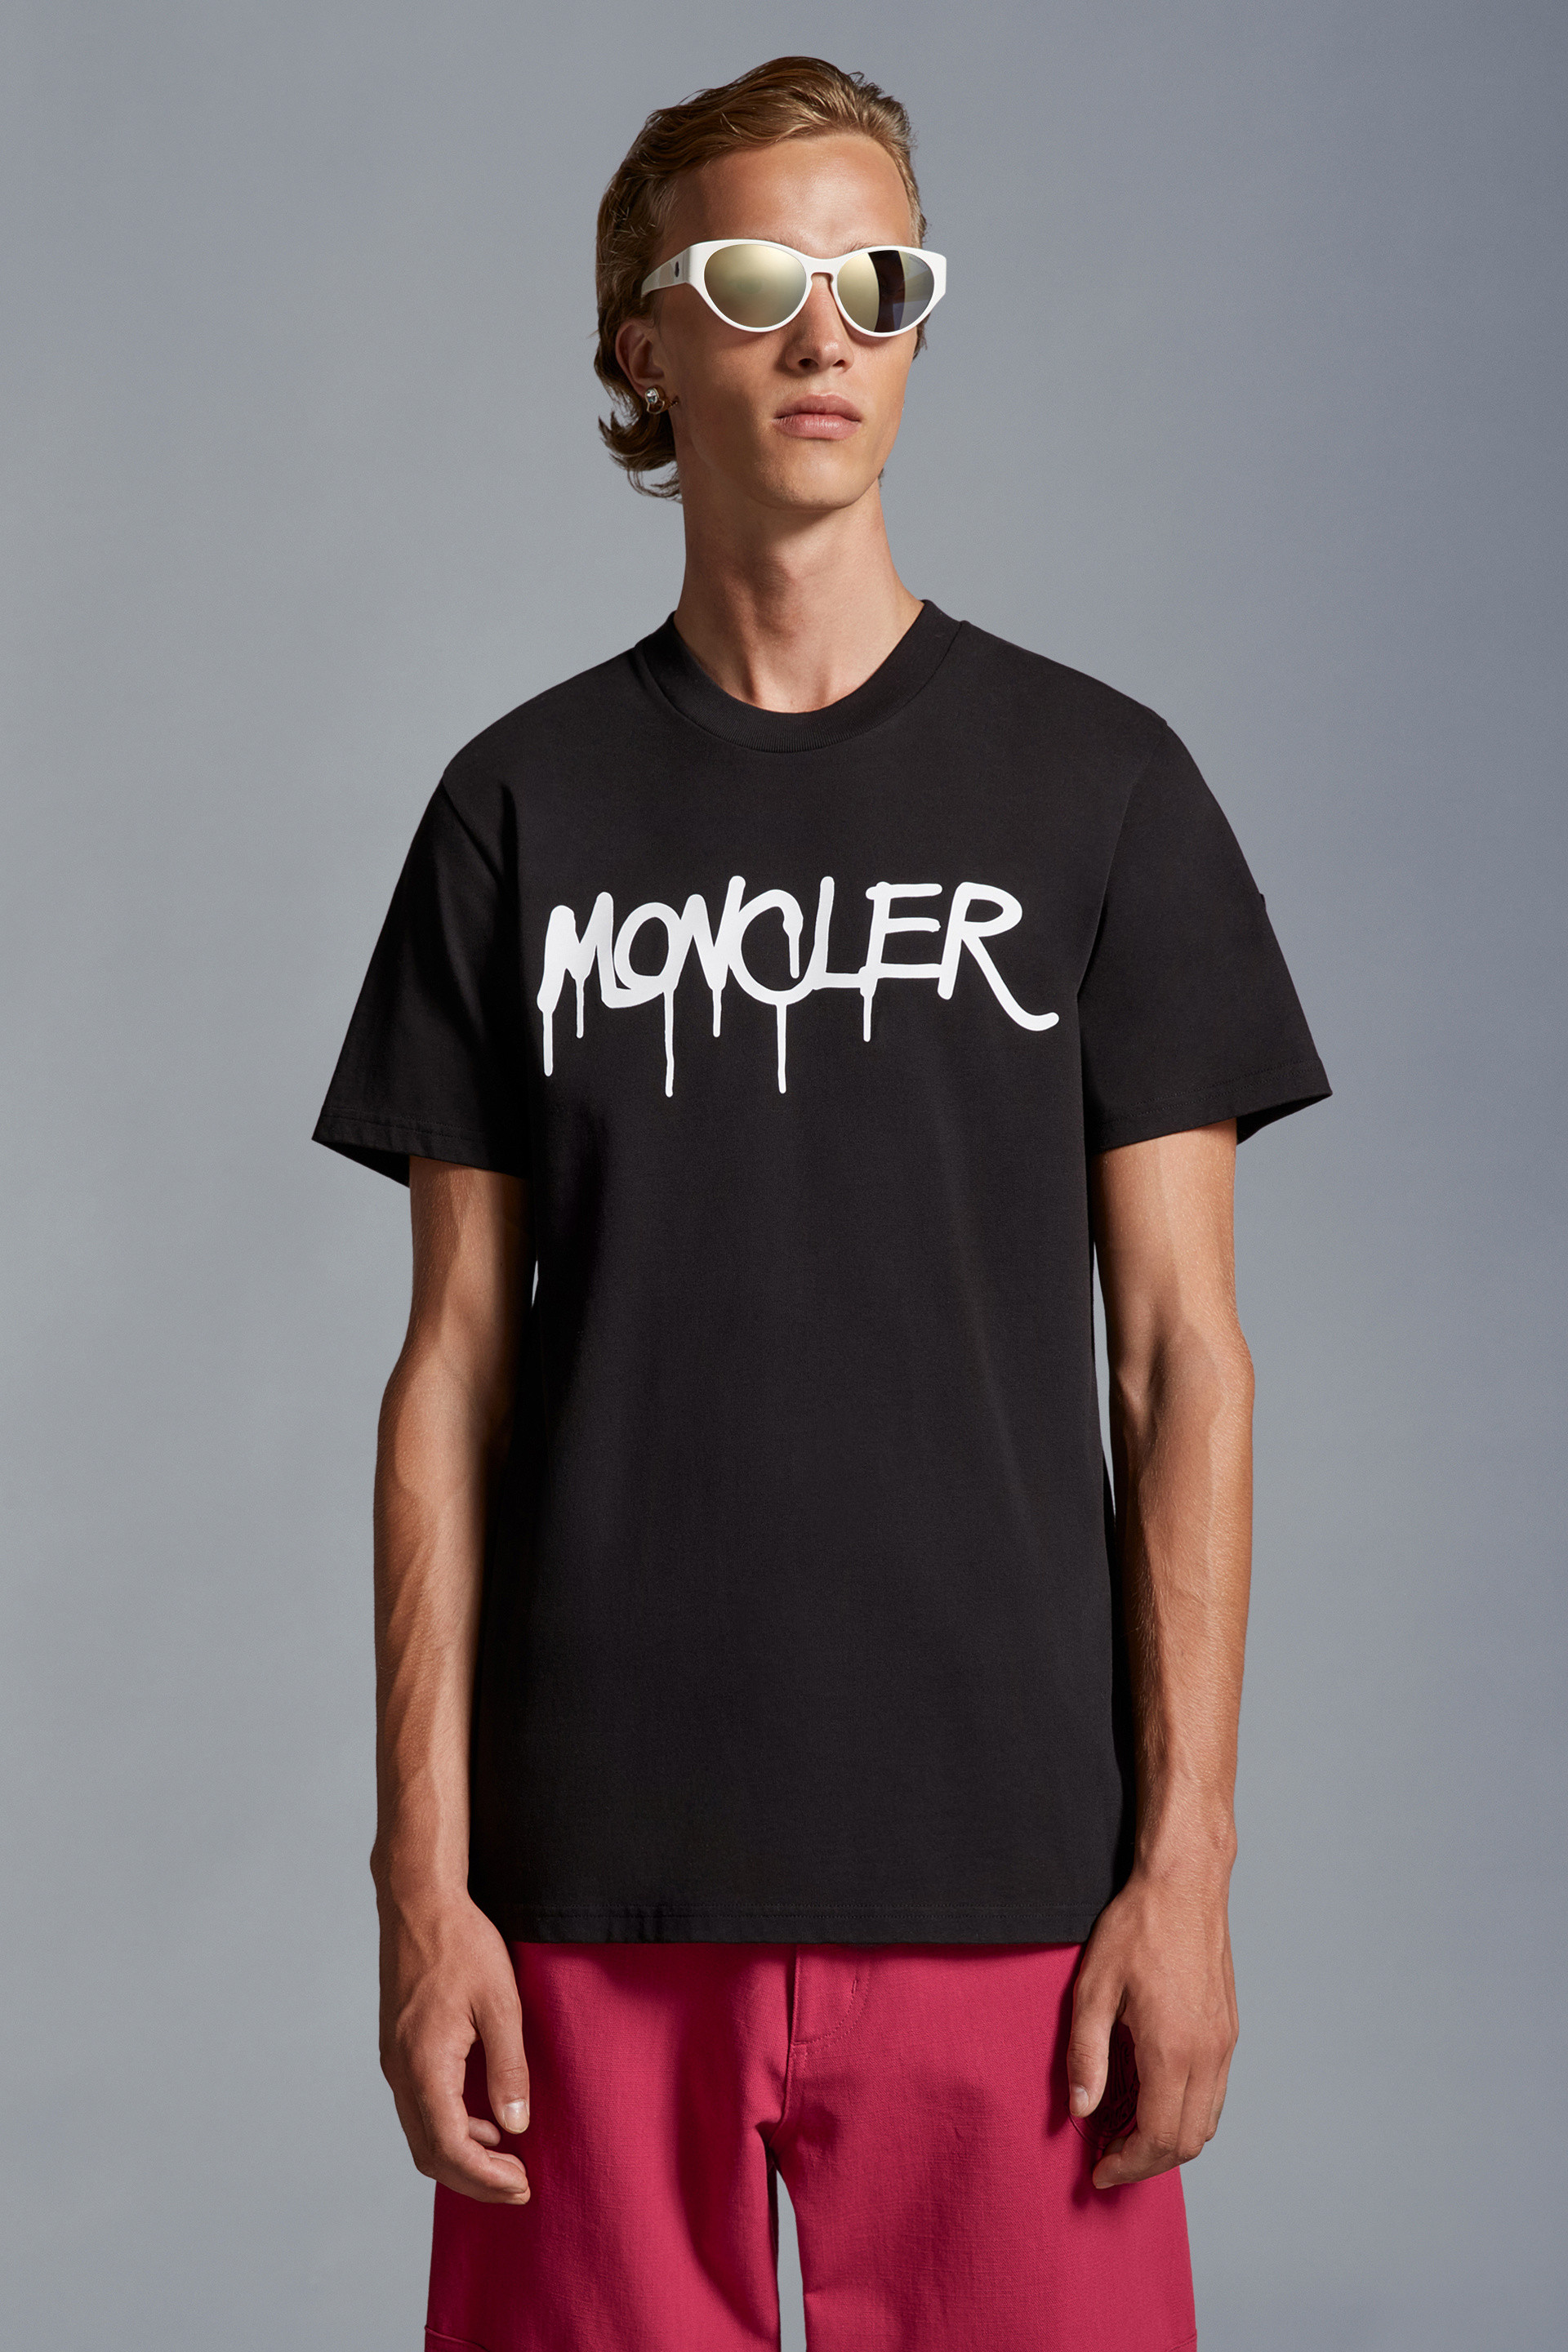 Mens Moncler T-Shirts